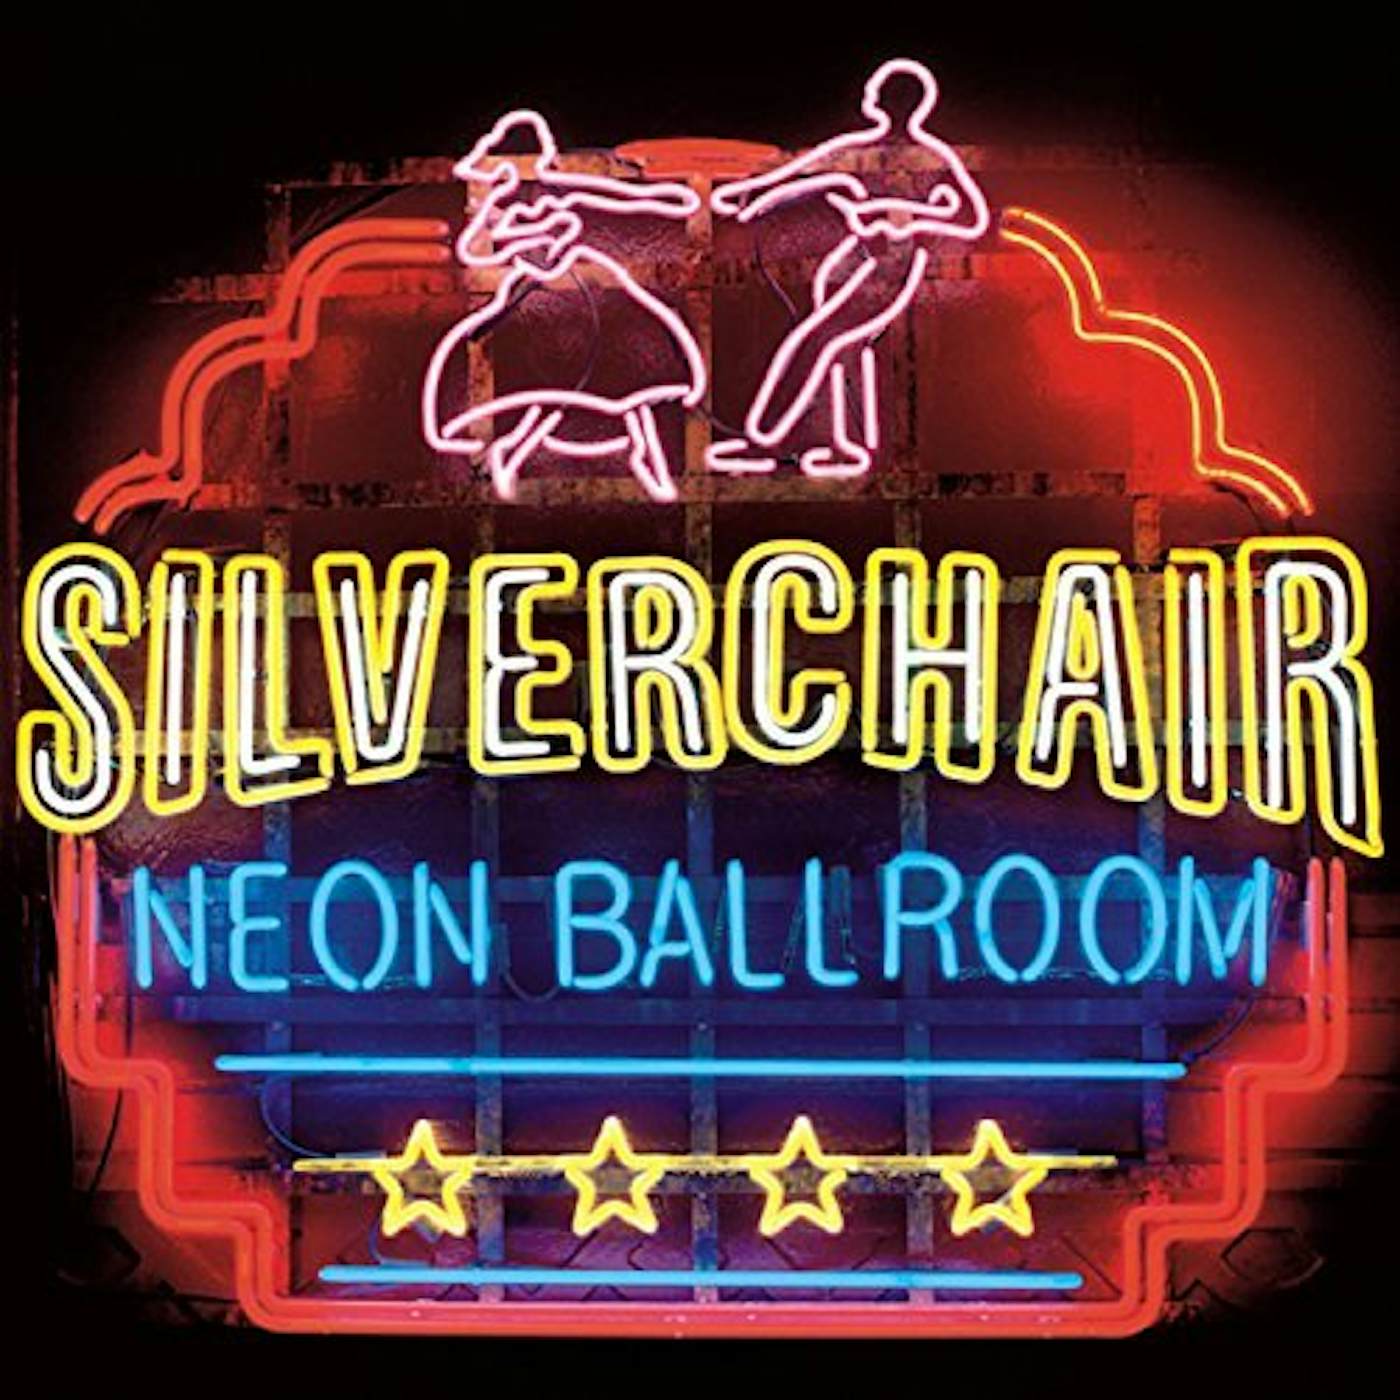 Silverchair Neon Ballroom Vinyl Record